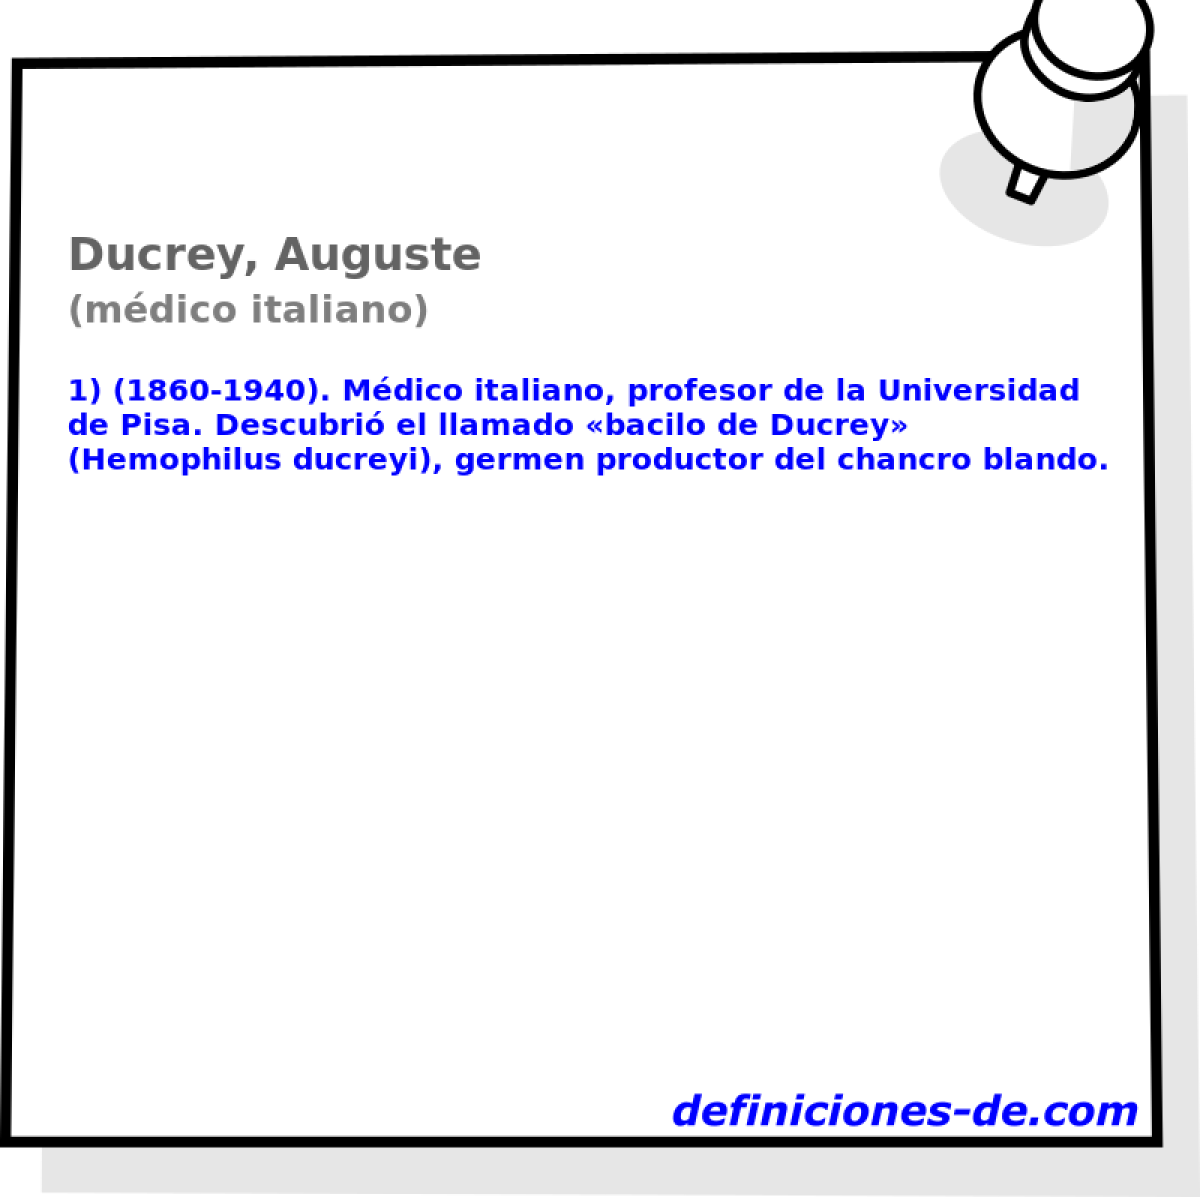 Ducrey, Auguste (mdico italiano)